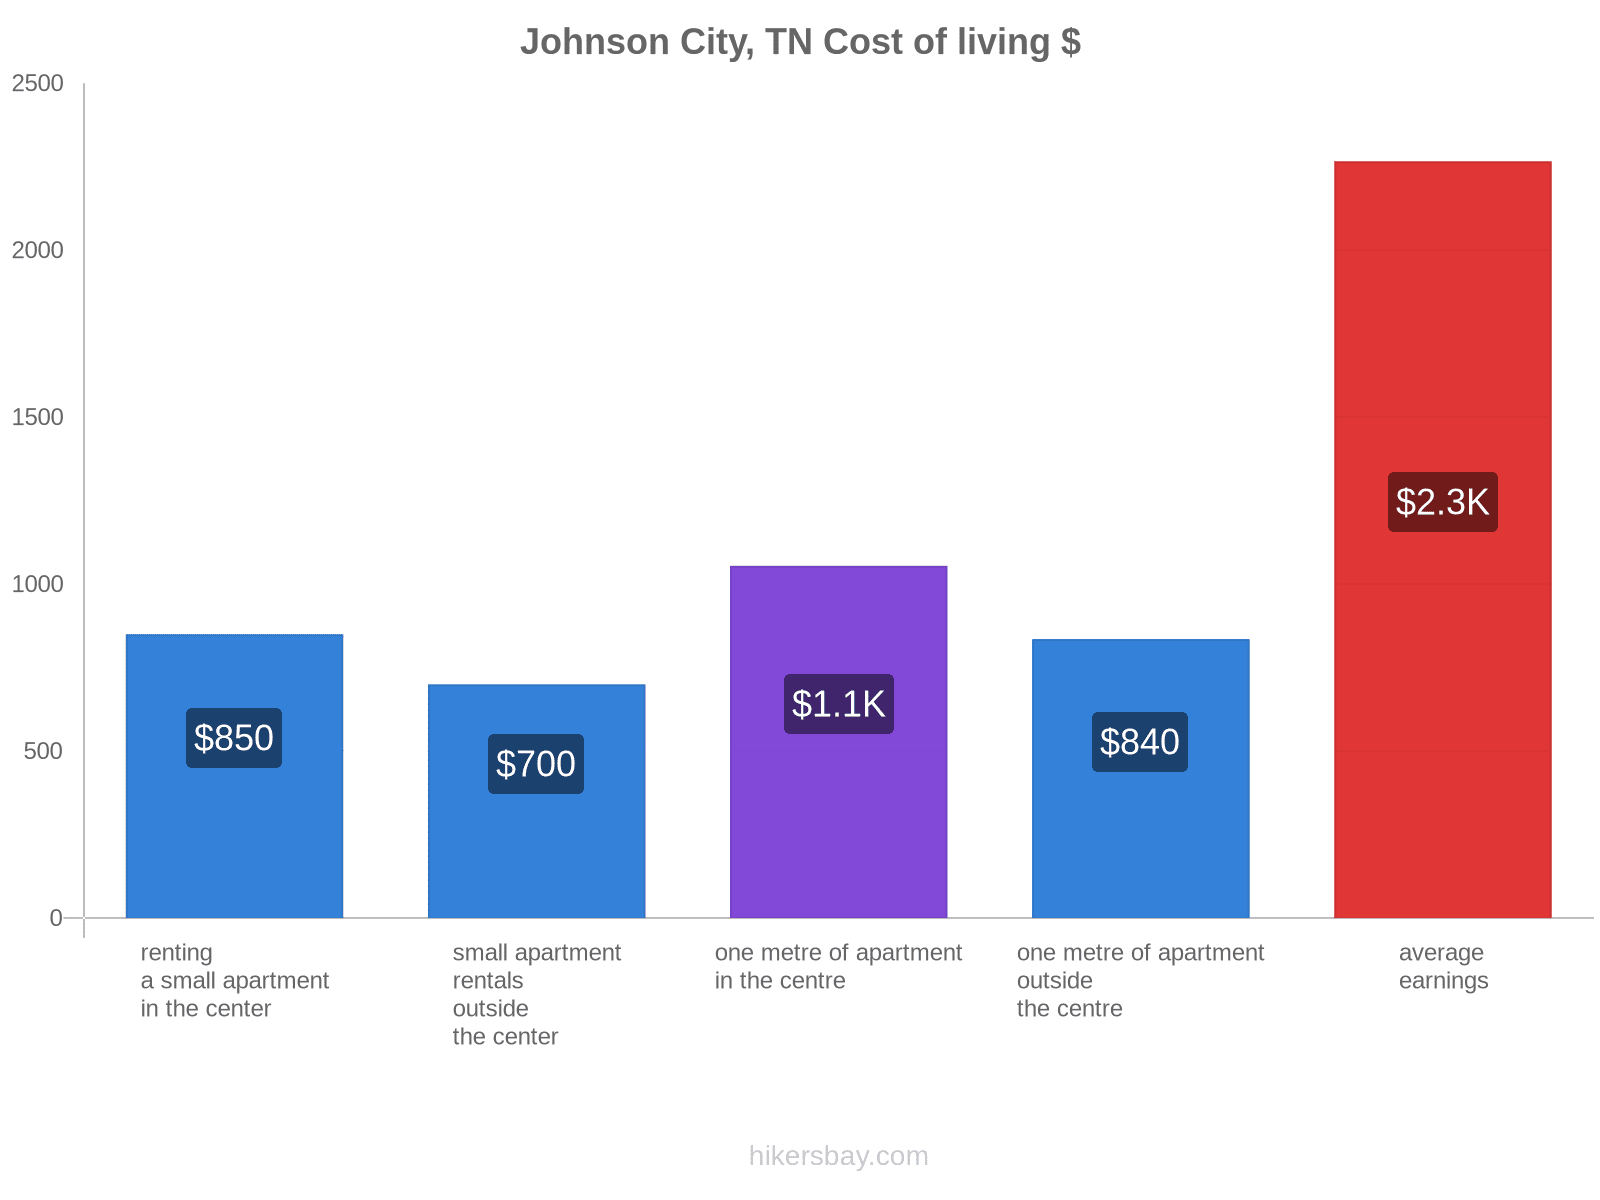 Johnson City, TN cost of living hikersbay.com